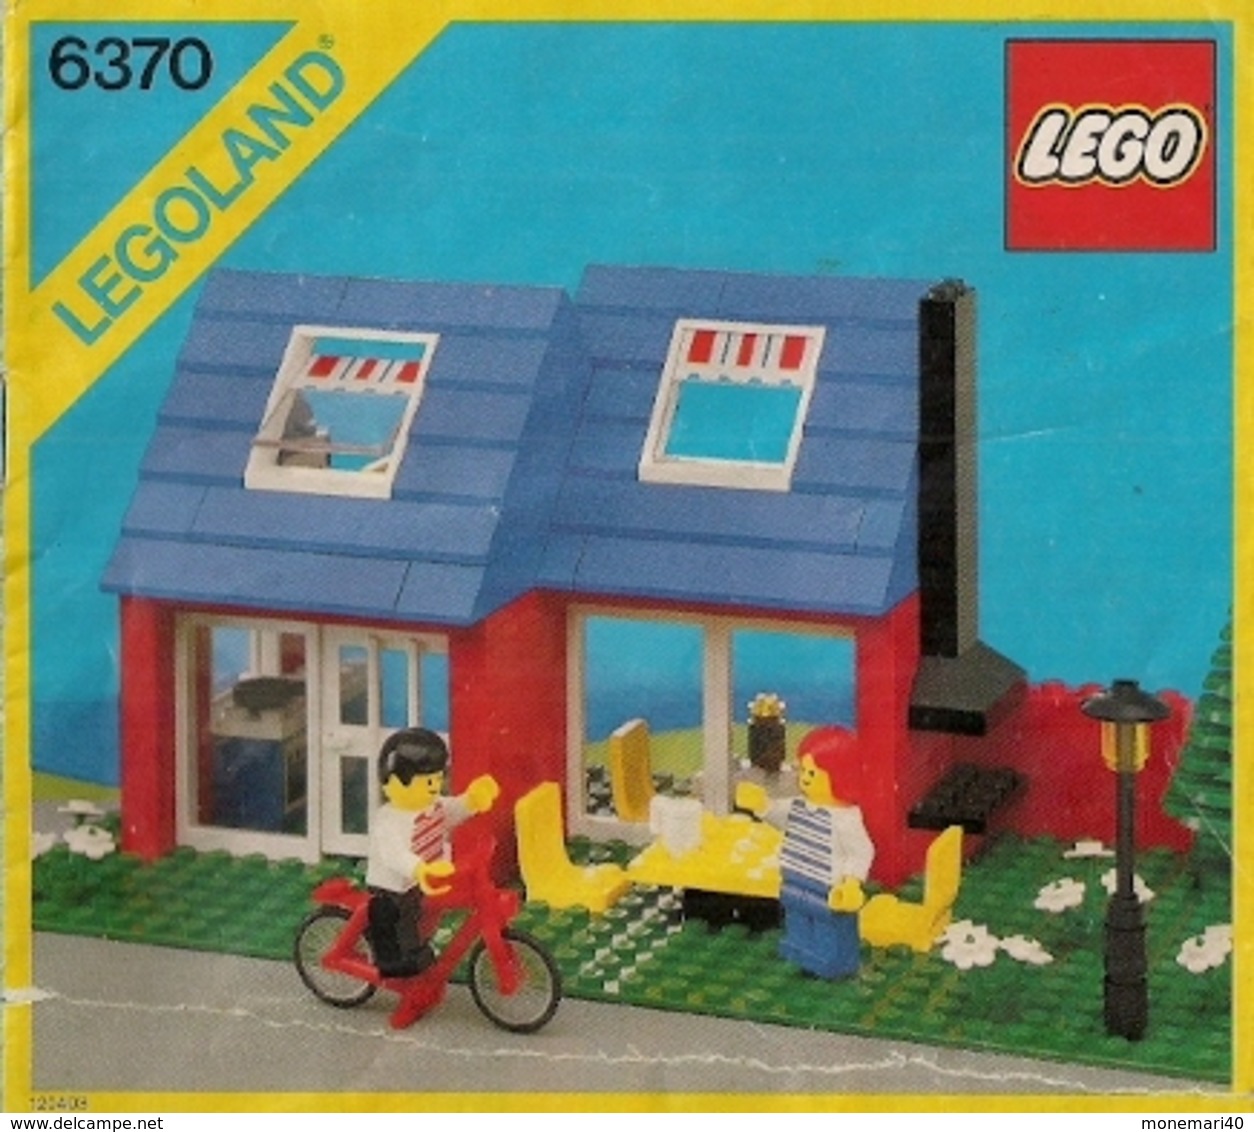 junk Governable trængsler Plans - LEGO SYSTEM - Plan notice - 6370 LEGOLAND.